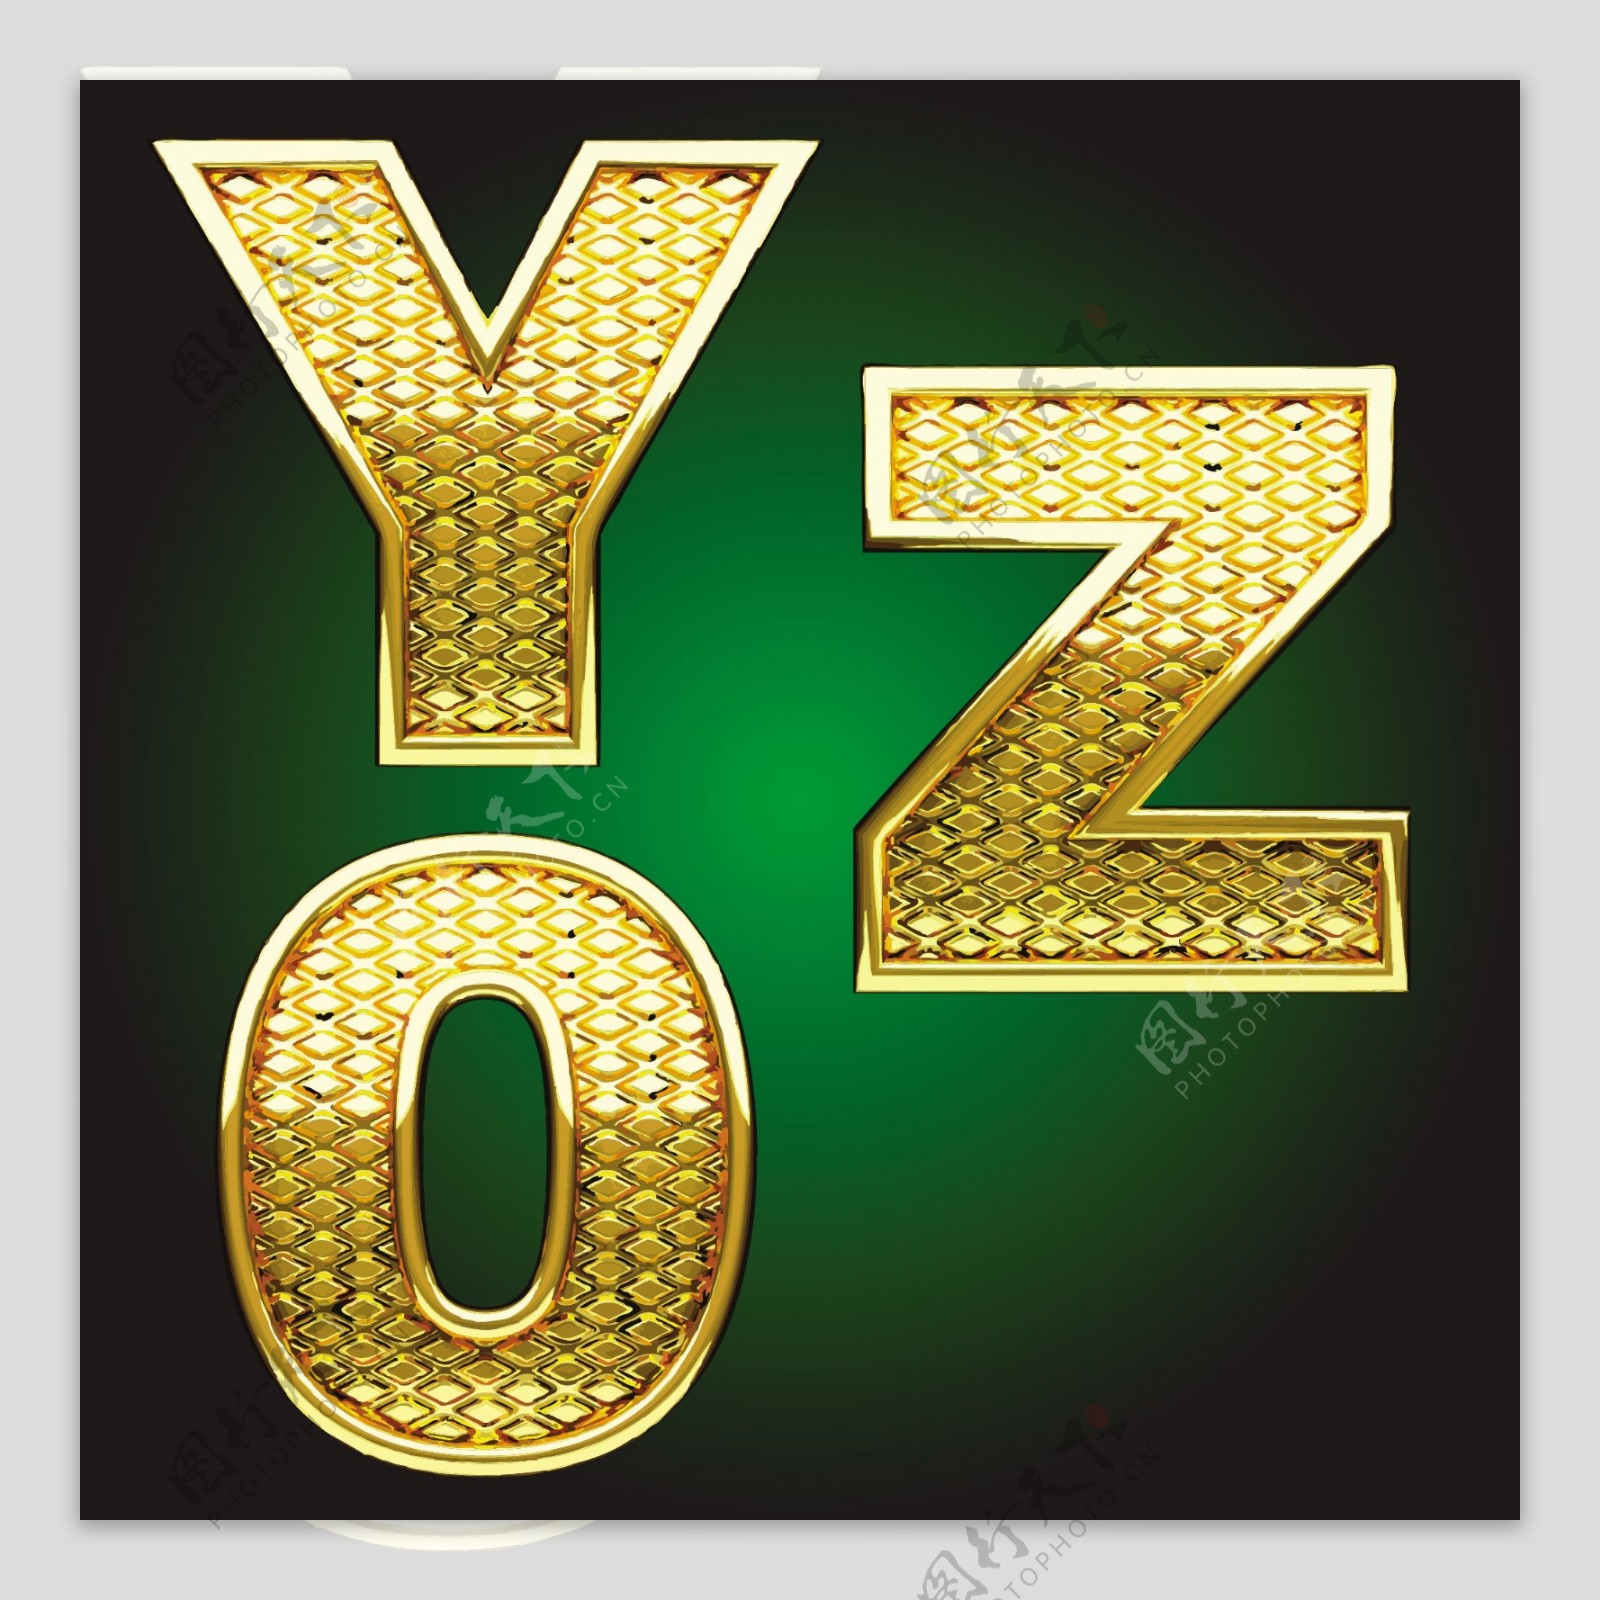 YOZ金属字母